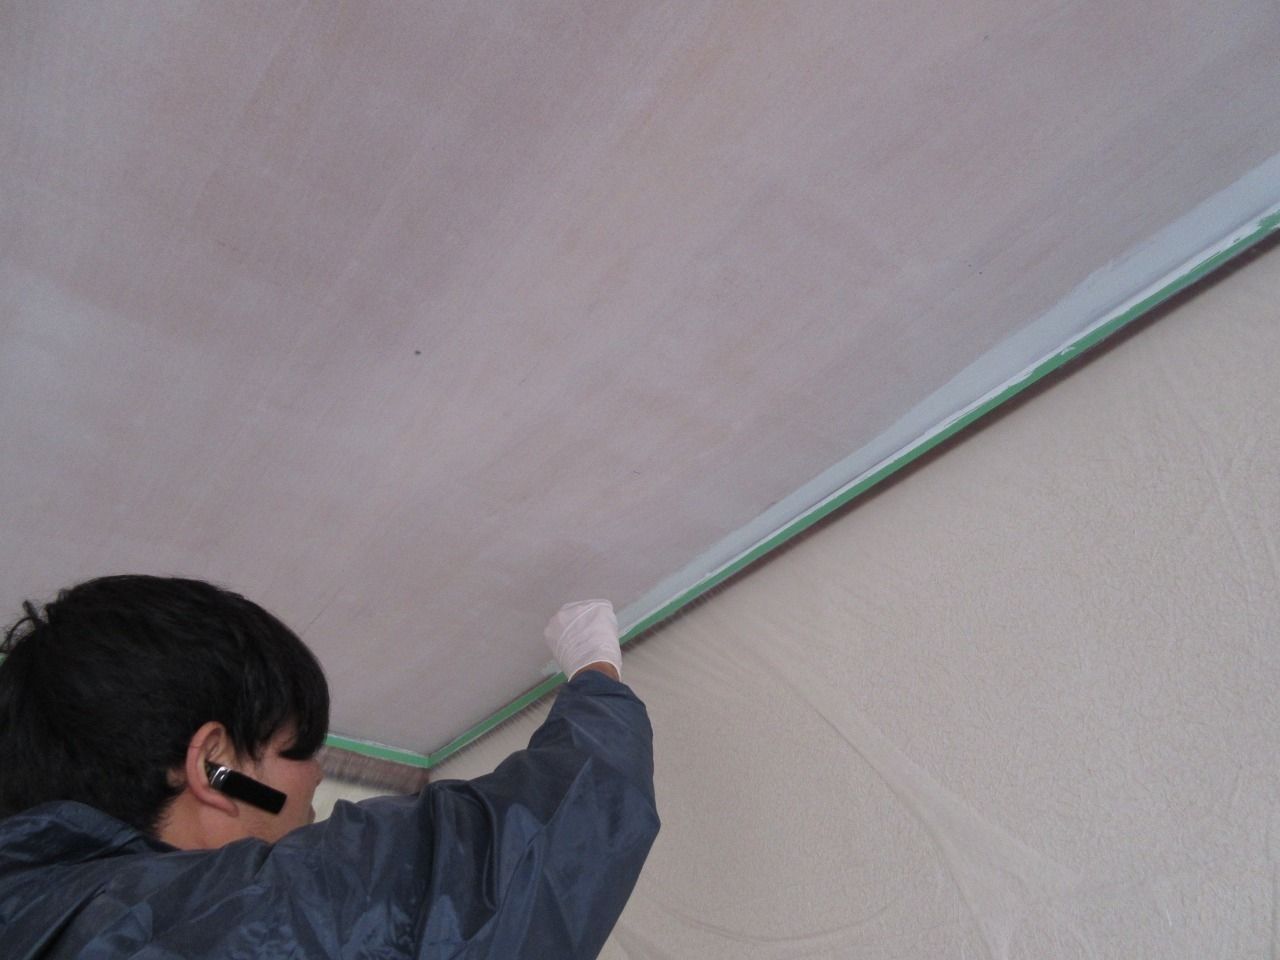 シーラーを塗った時と同じように、まず細かい部分である天井の際部分をハケを使って塗っていき、それが終わったらローラーバケを使って全体的に塗っていきます。